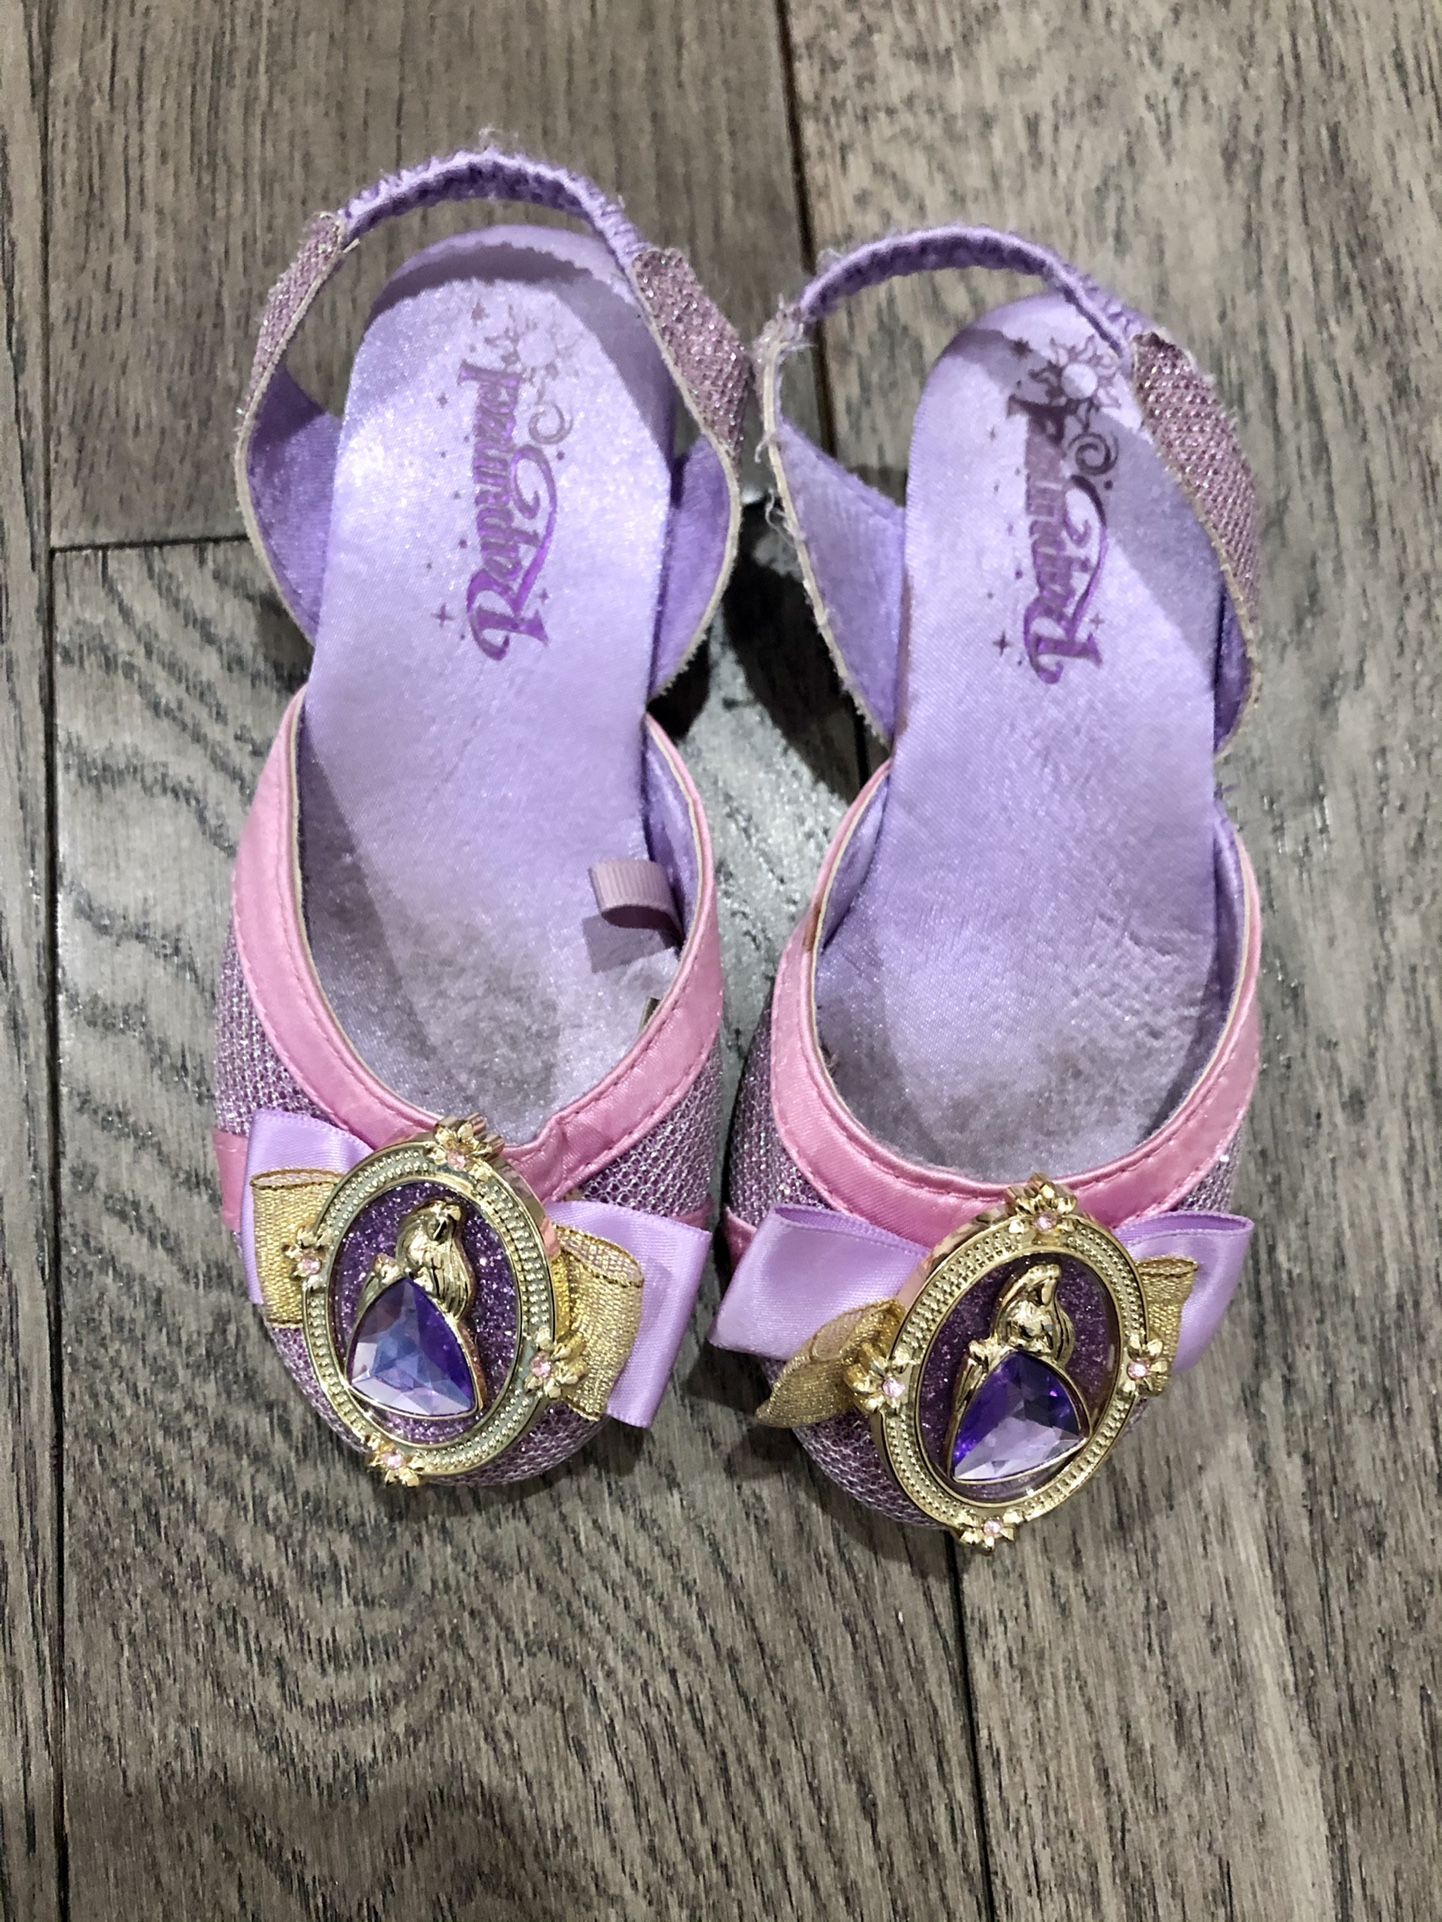 Disney’s Rapunzel dress up shoes for toddler size 9/10